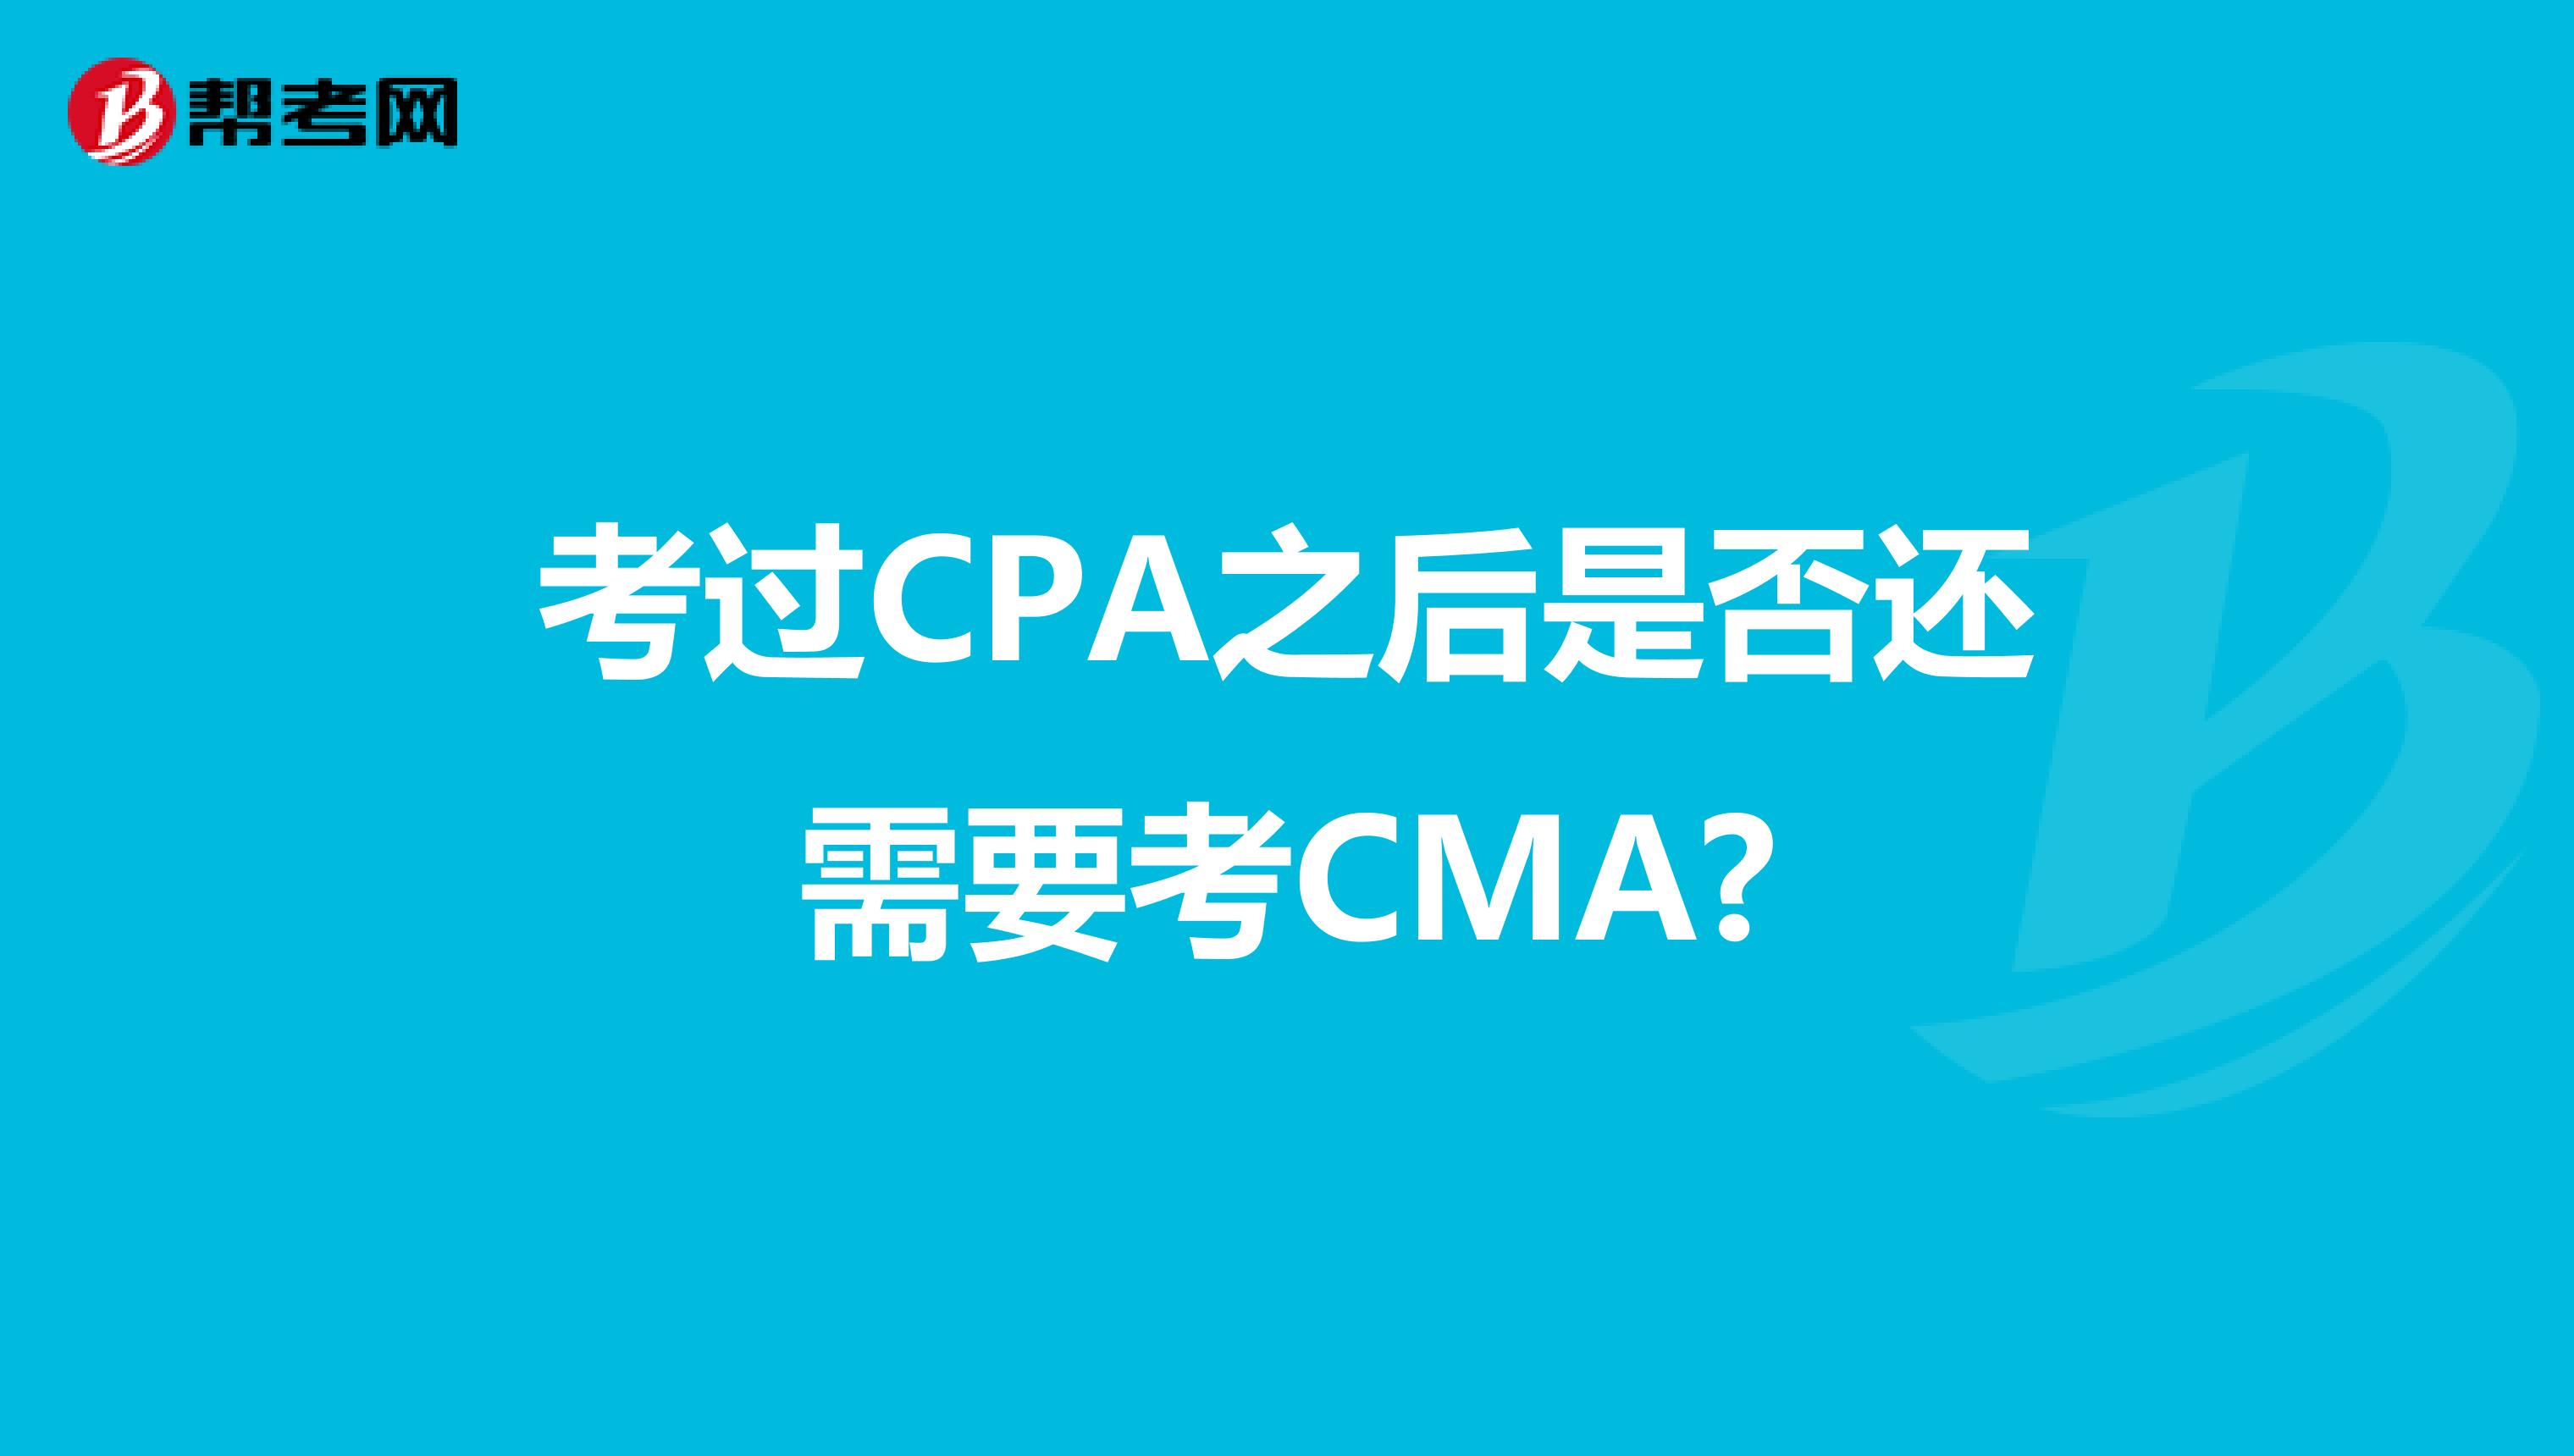 考过CPA之后是否还需要考CMA?